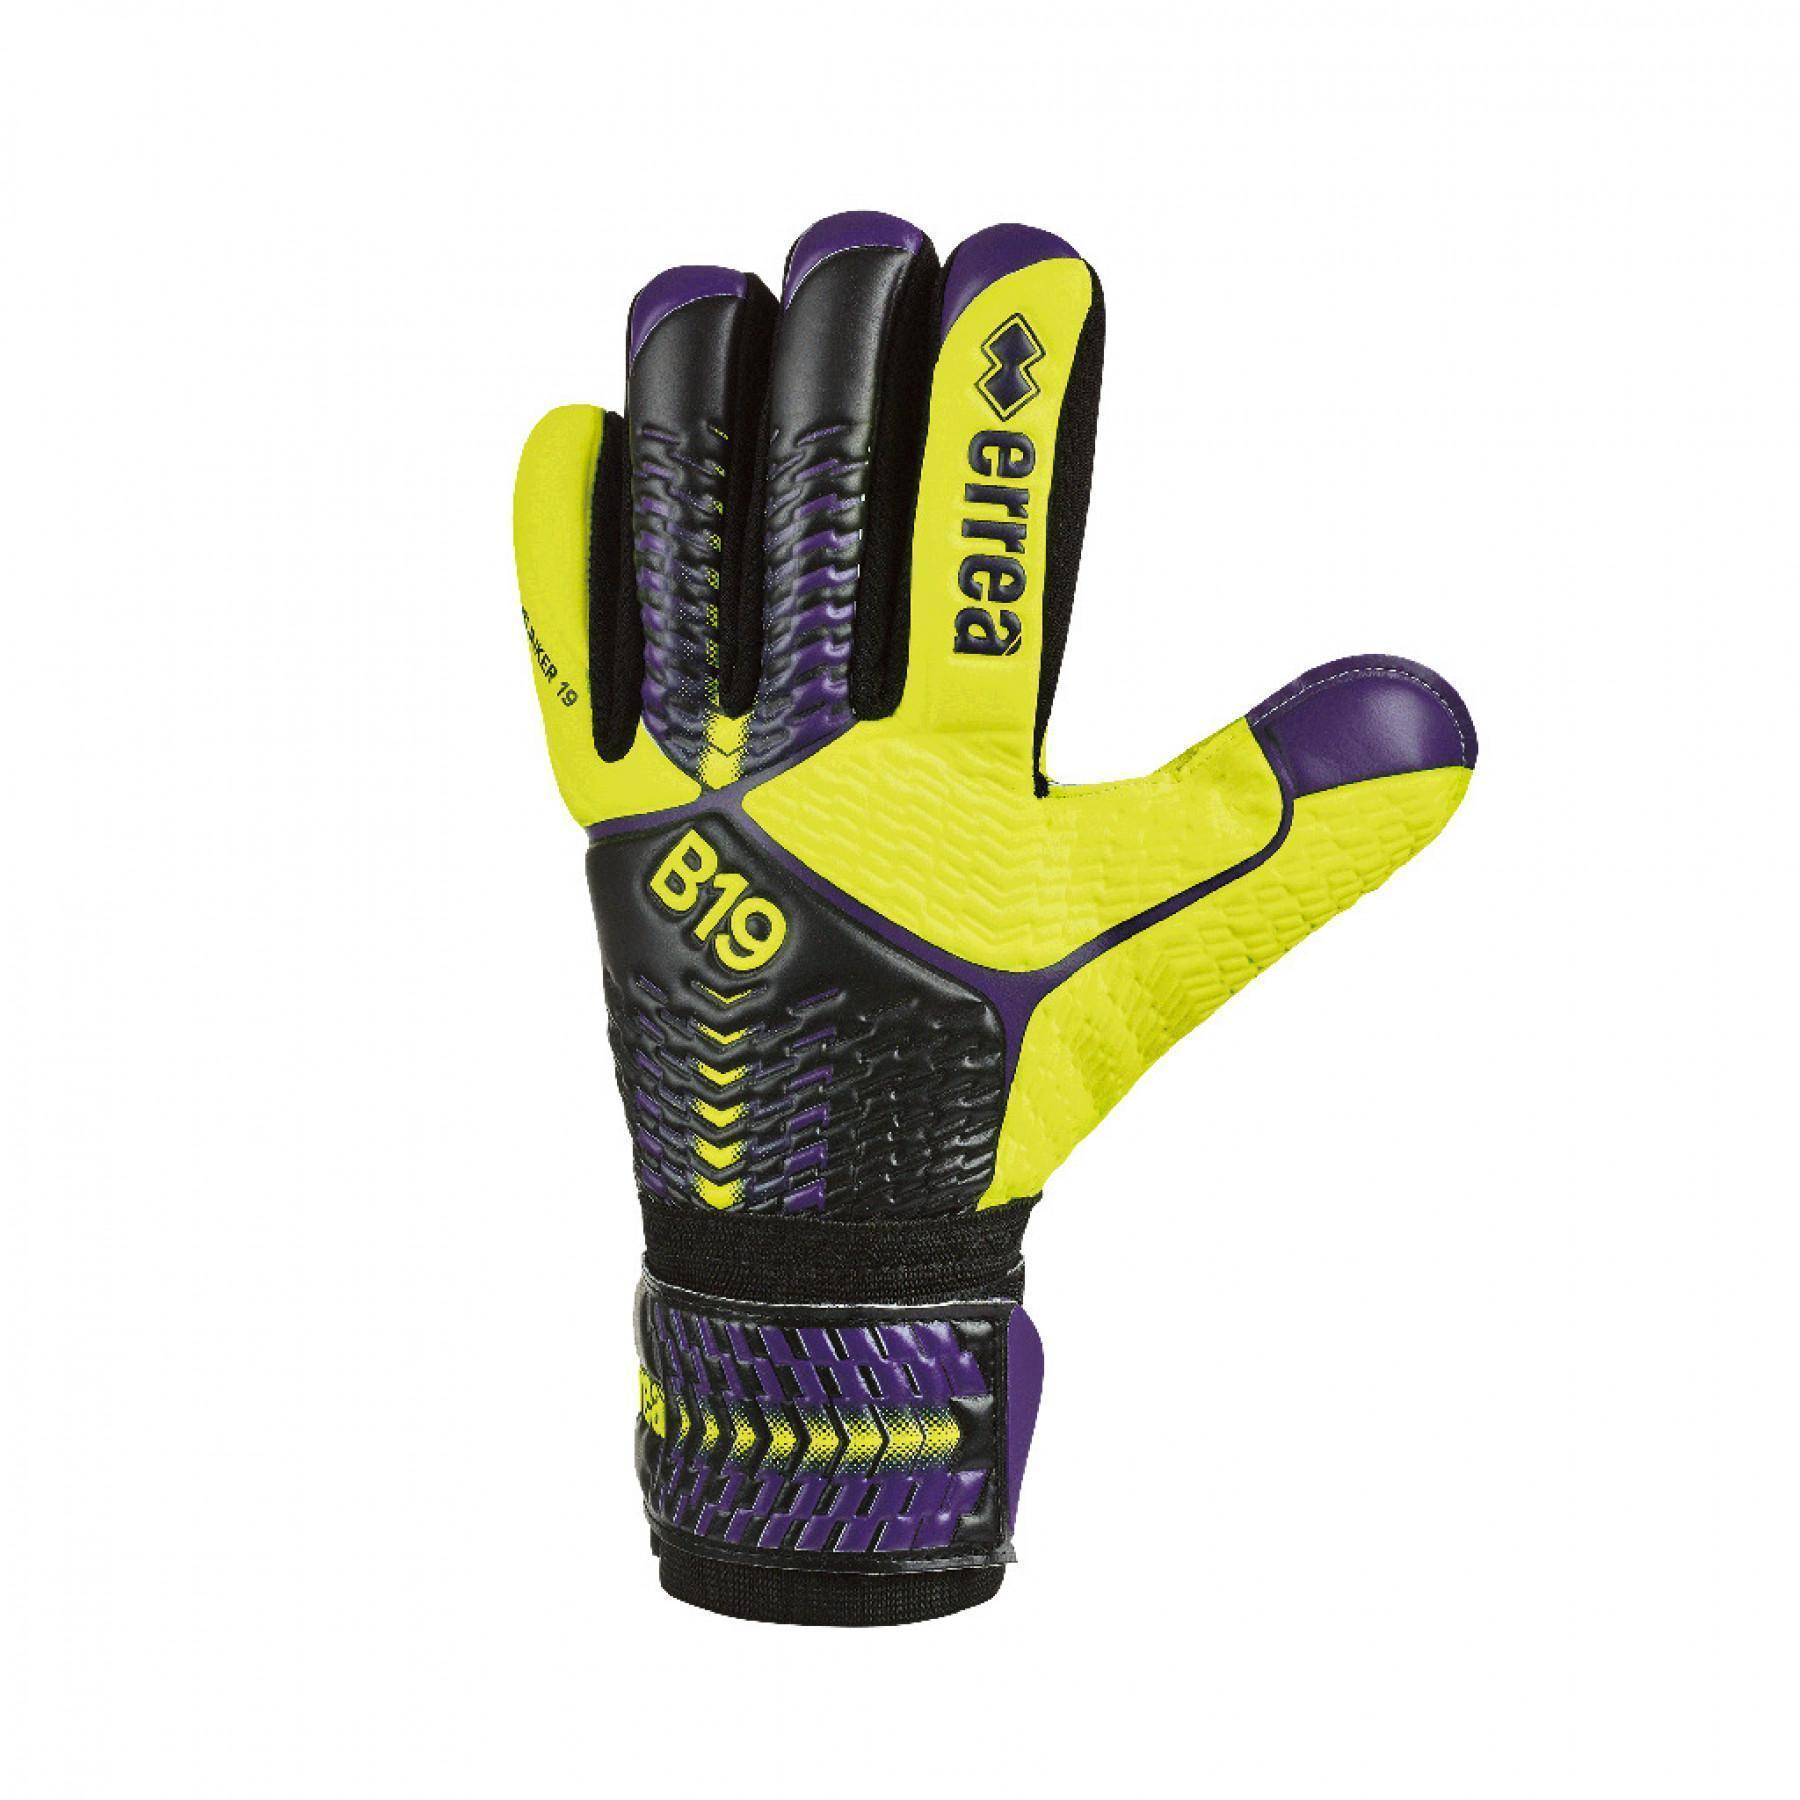 Goalkeeper gloves Errea blinker 19